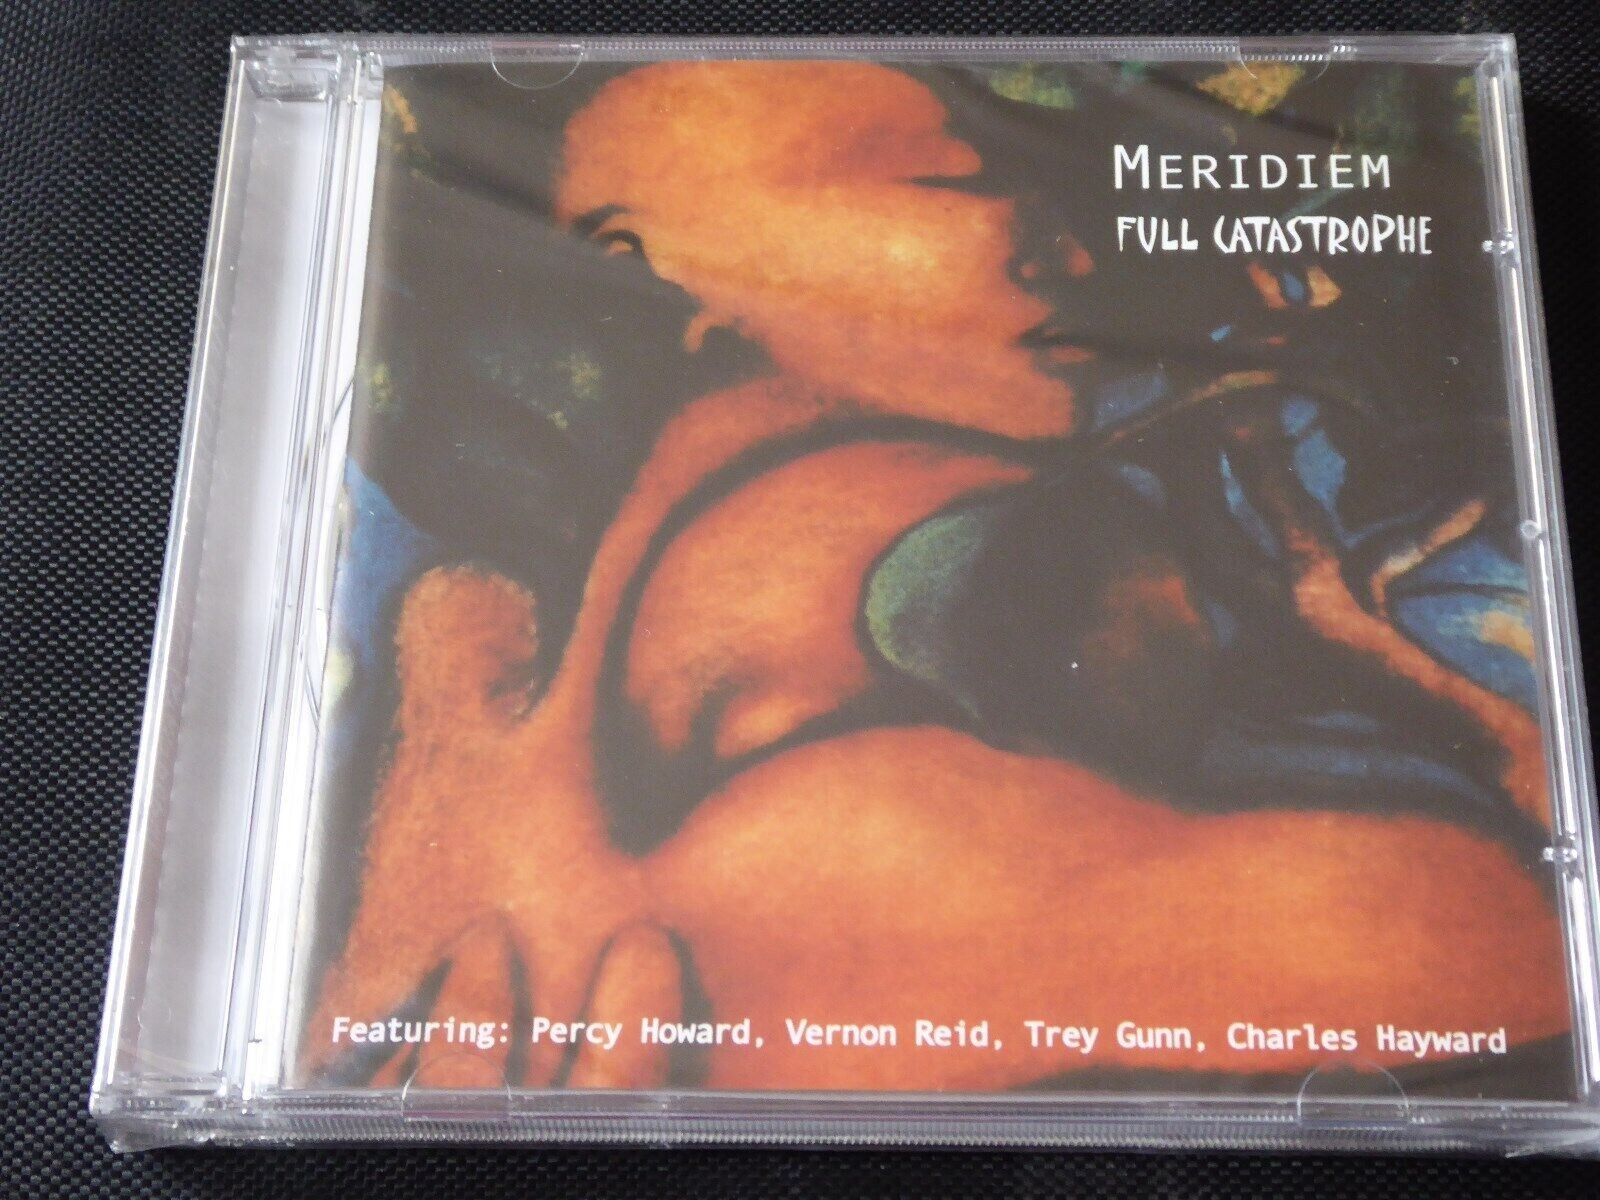 Meridiem - Full Catastrophe (2009)